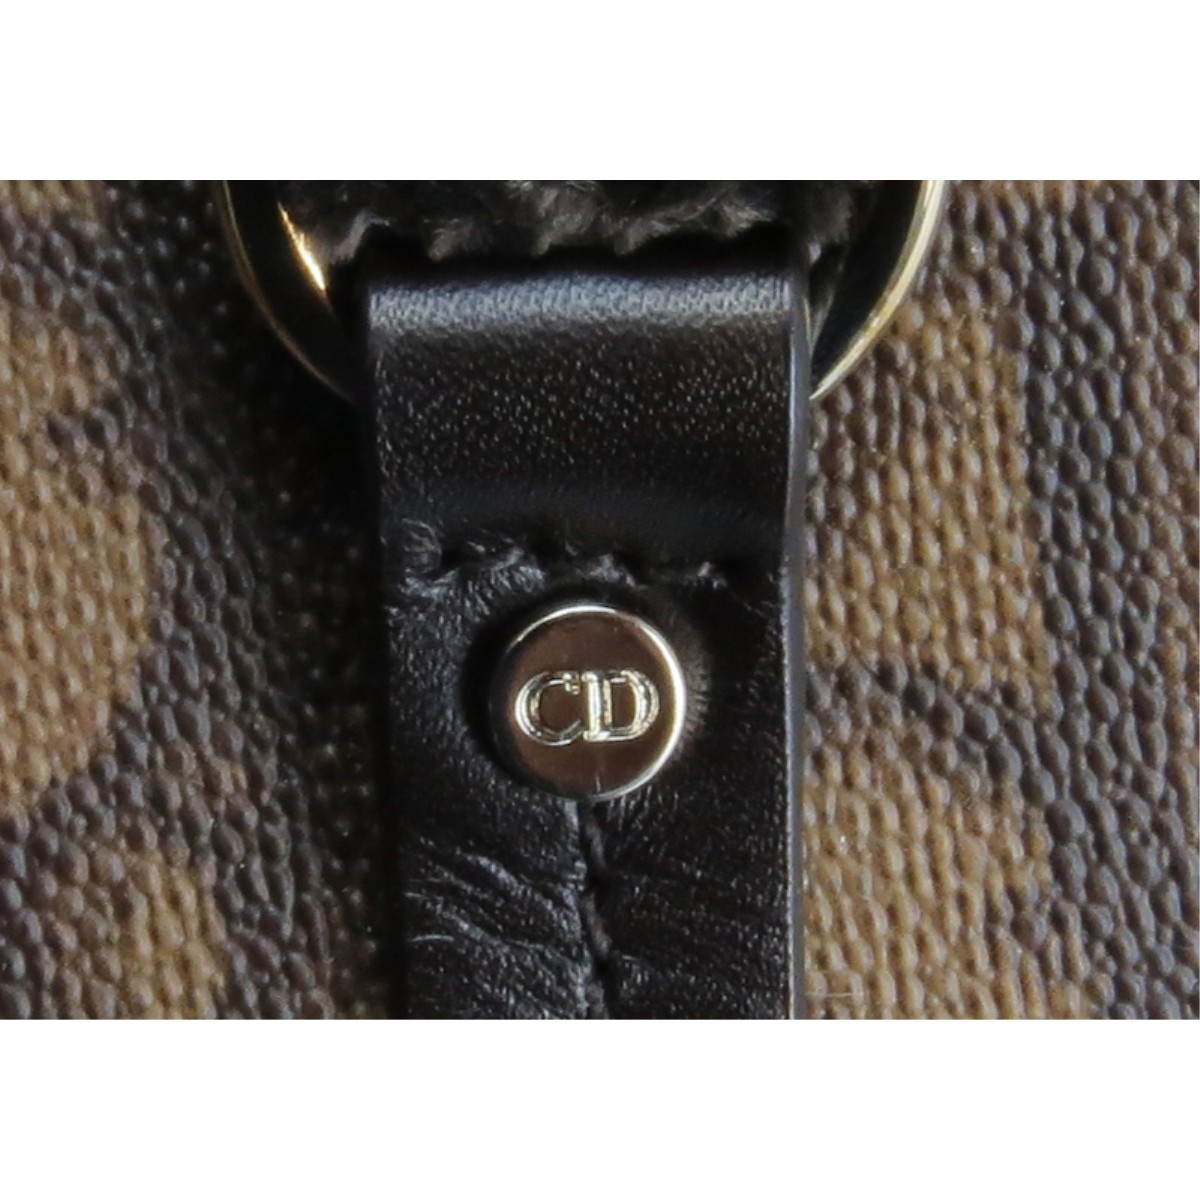 Christian Dior Monogram Romantique Trotter Handbag